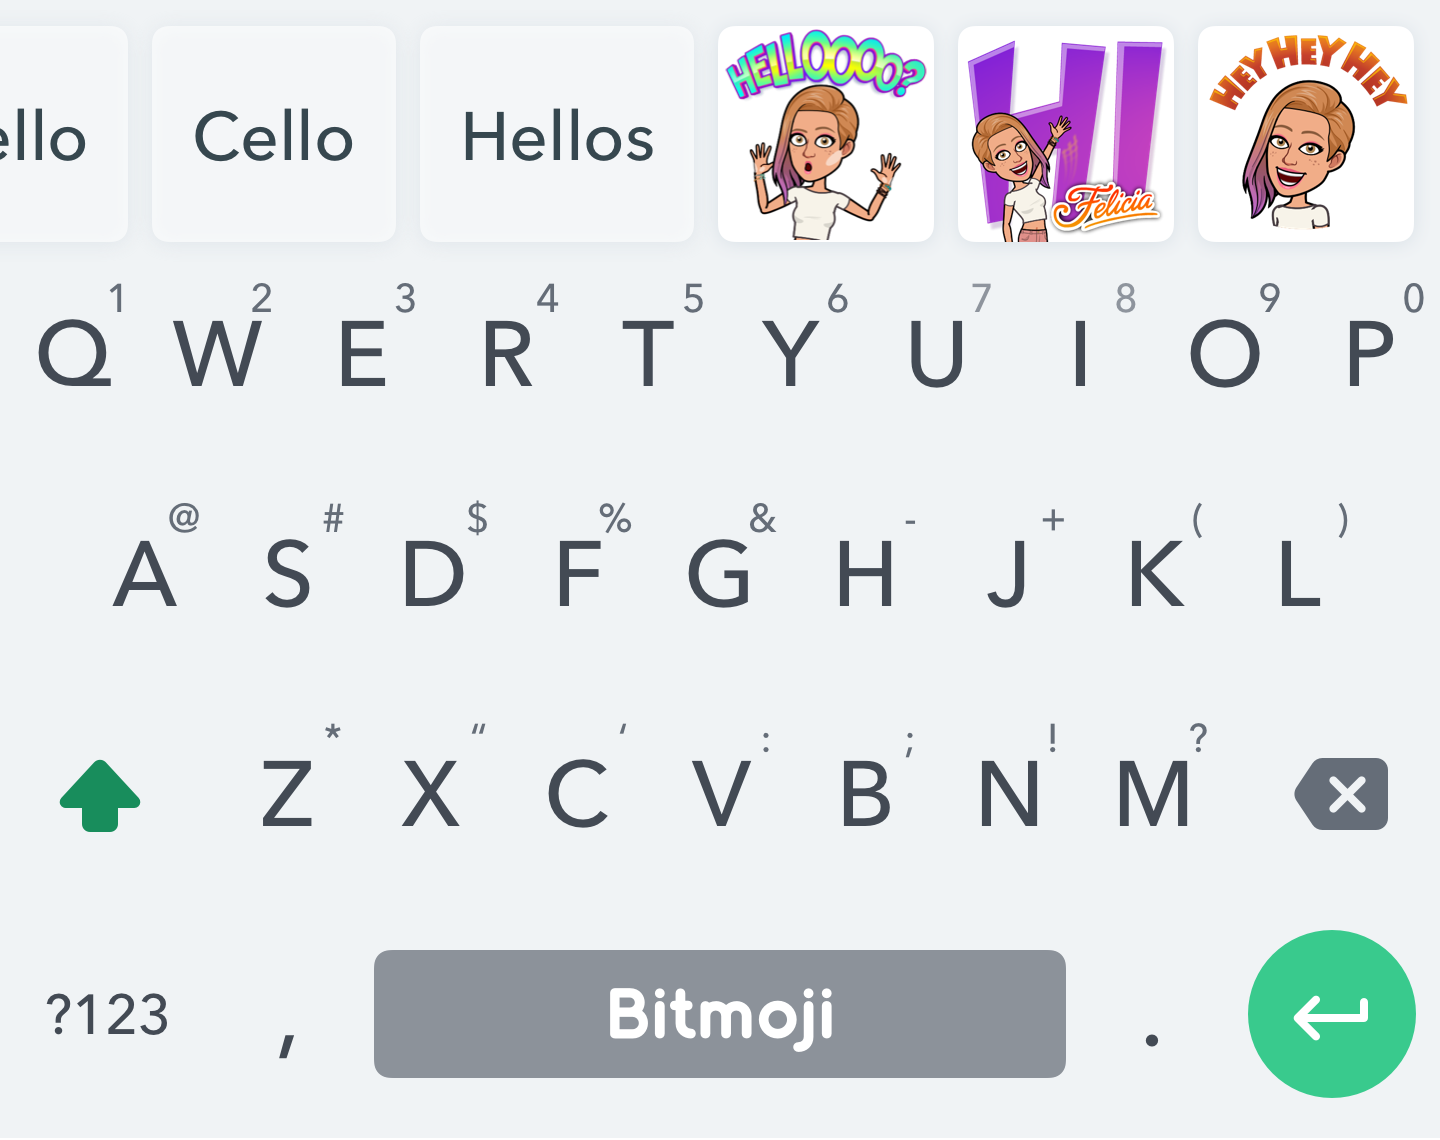 لوحة مفاتيح للكتابة مع كلمات أساسية في الأعلى واقتراحات ملصقات Bitmoji بناء على ما يكتبه المُستخدم